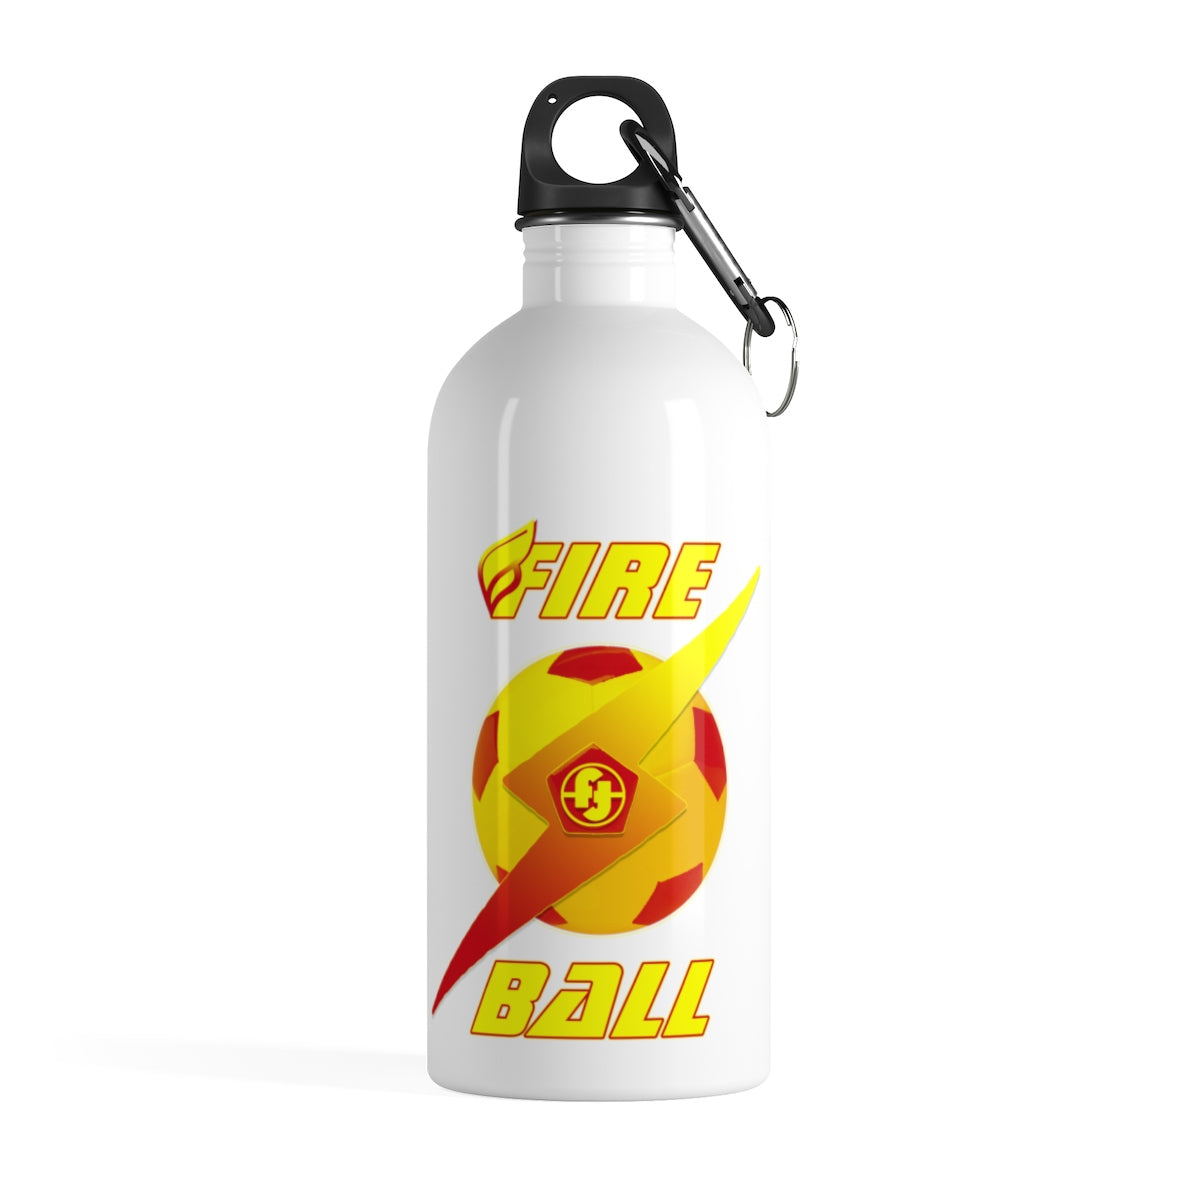 Soccer Stainless Steel Water Bottles Motivational Water Bottles + Carabiner & Key Chain Ring 14 oz